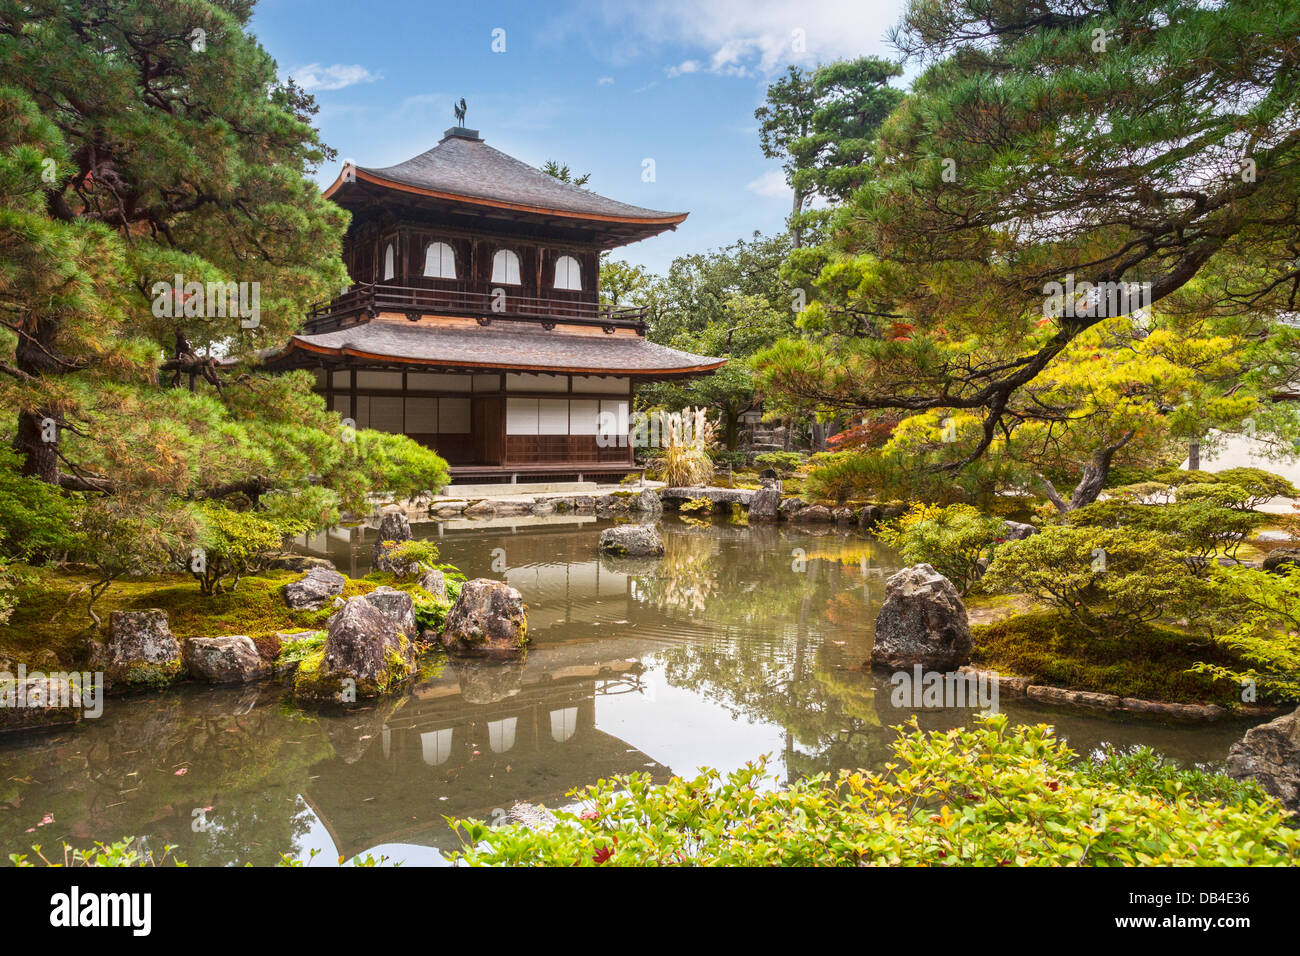 Le pavillon de l'argent du temple de Ginkaku-ji ou Jisho-ji à Kyoto, vu à l'automne. Ce temple bouddhiste Zen est un remarquable... Banque D'Images